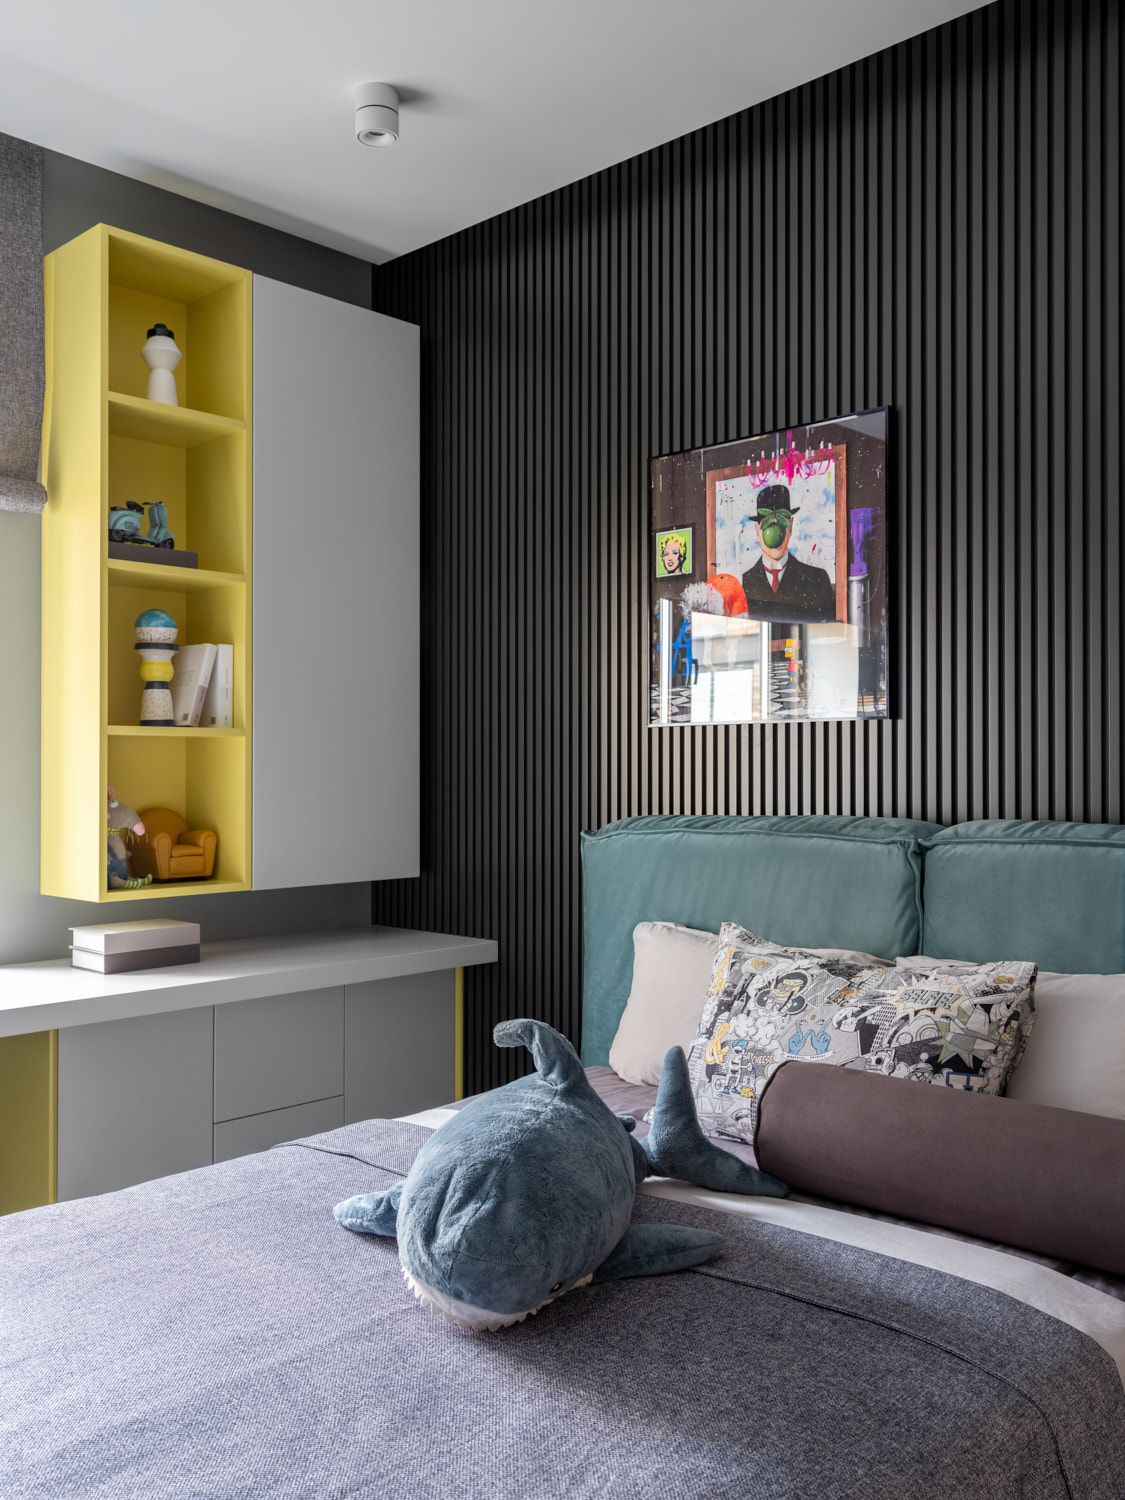 Nếu bạn muốn trải nghiệm phong cách trang trí độc đáo về màu sắc, hãy thử chọn lam gỗ màu đen tuyền như căn hộ này.